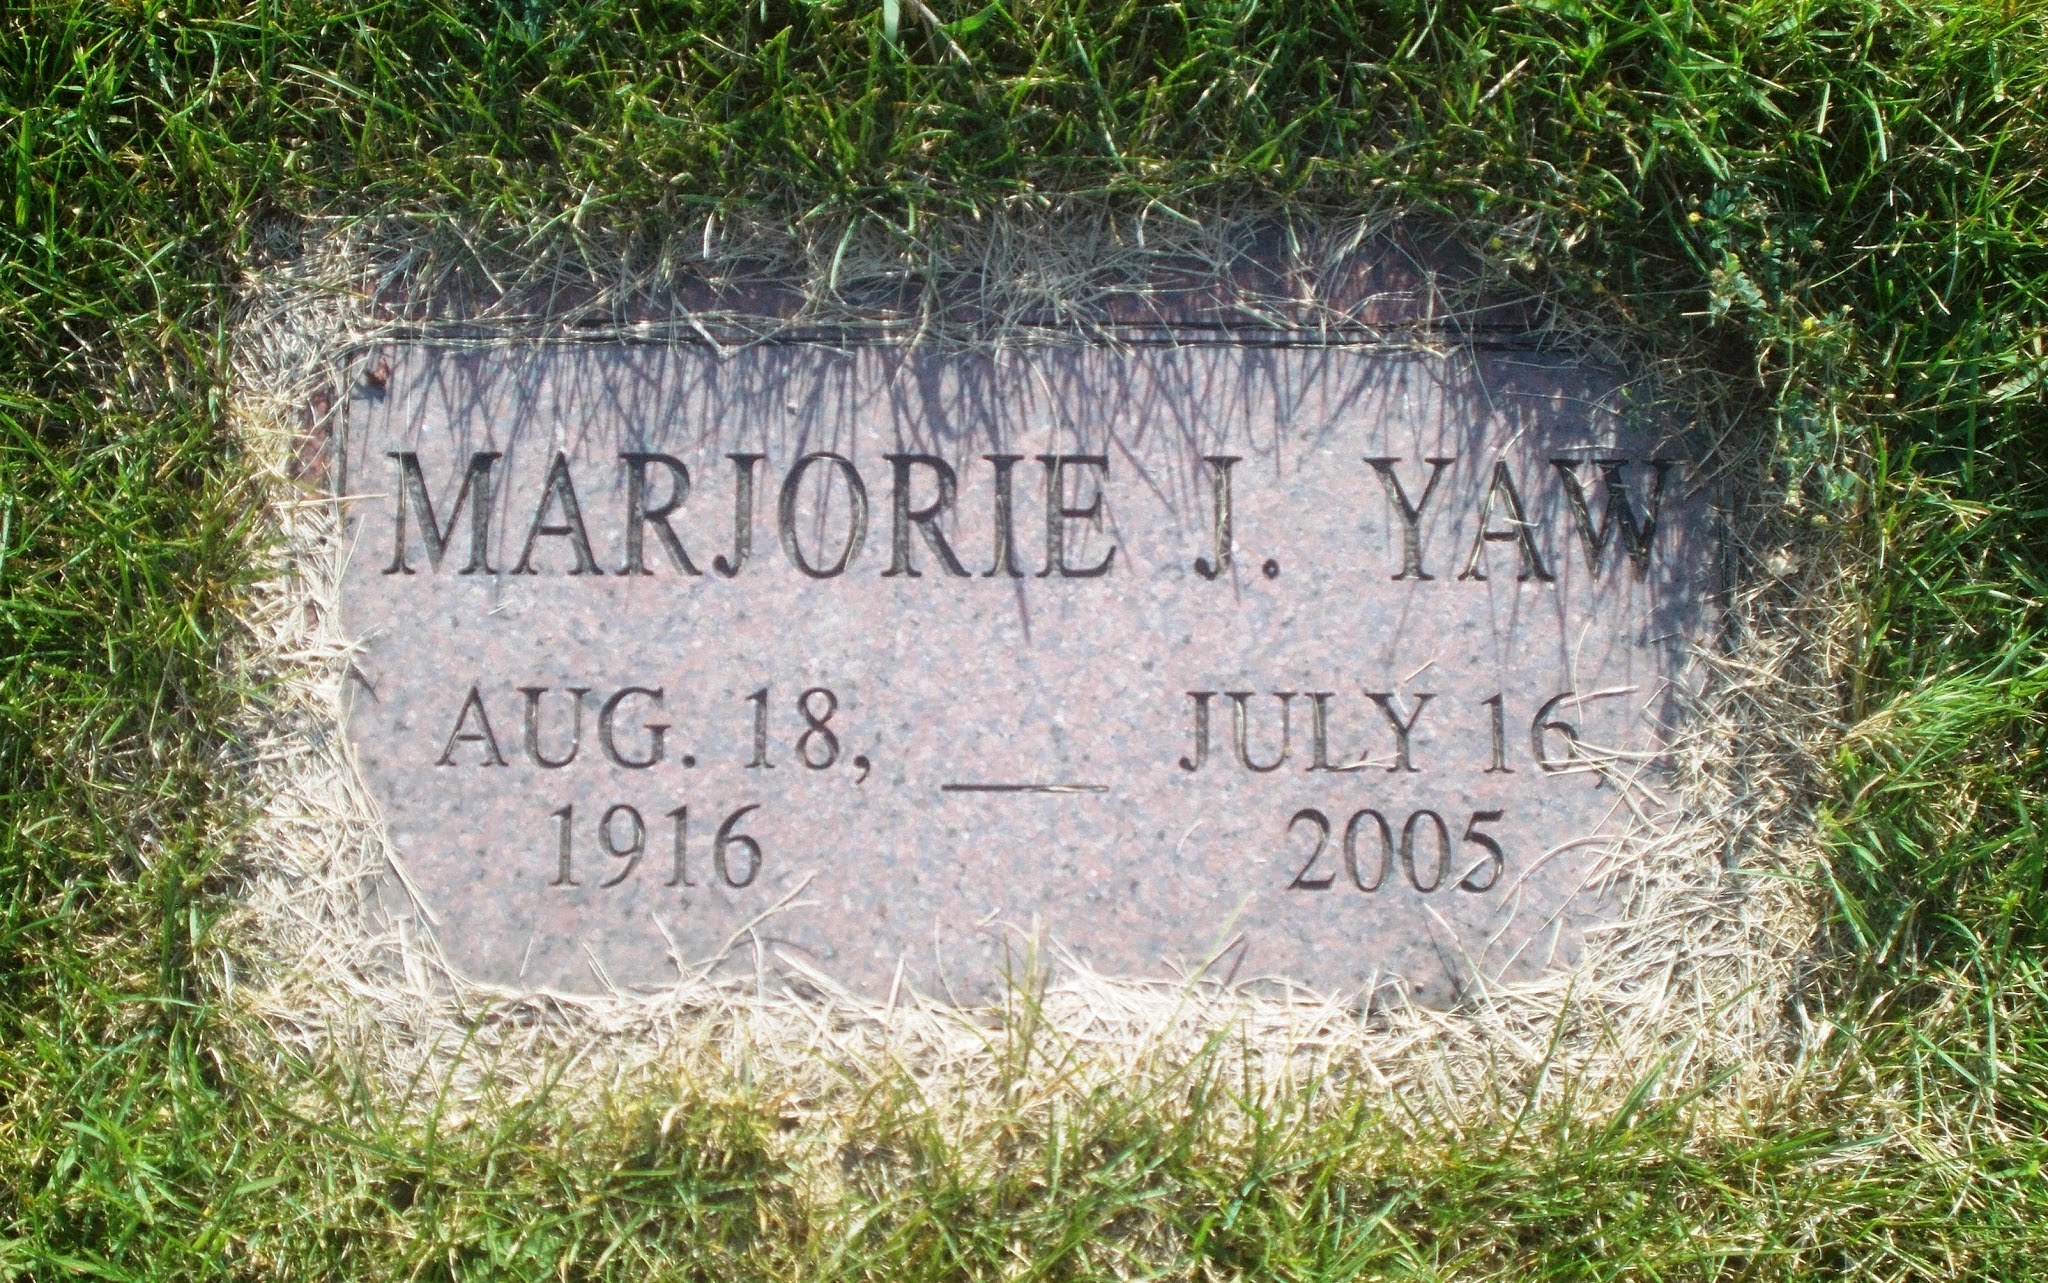 Marjorie J Yaw